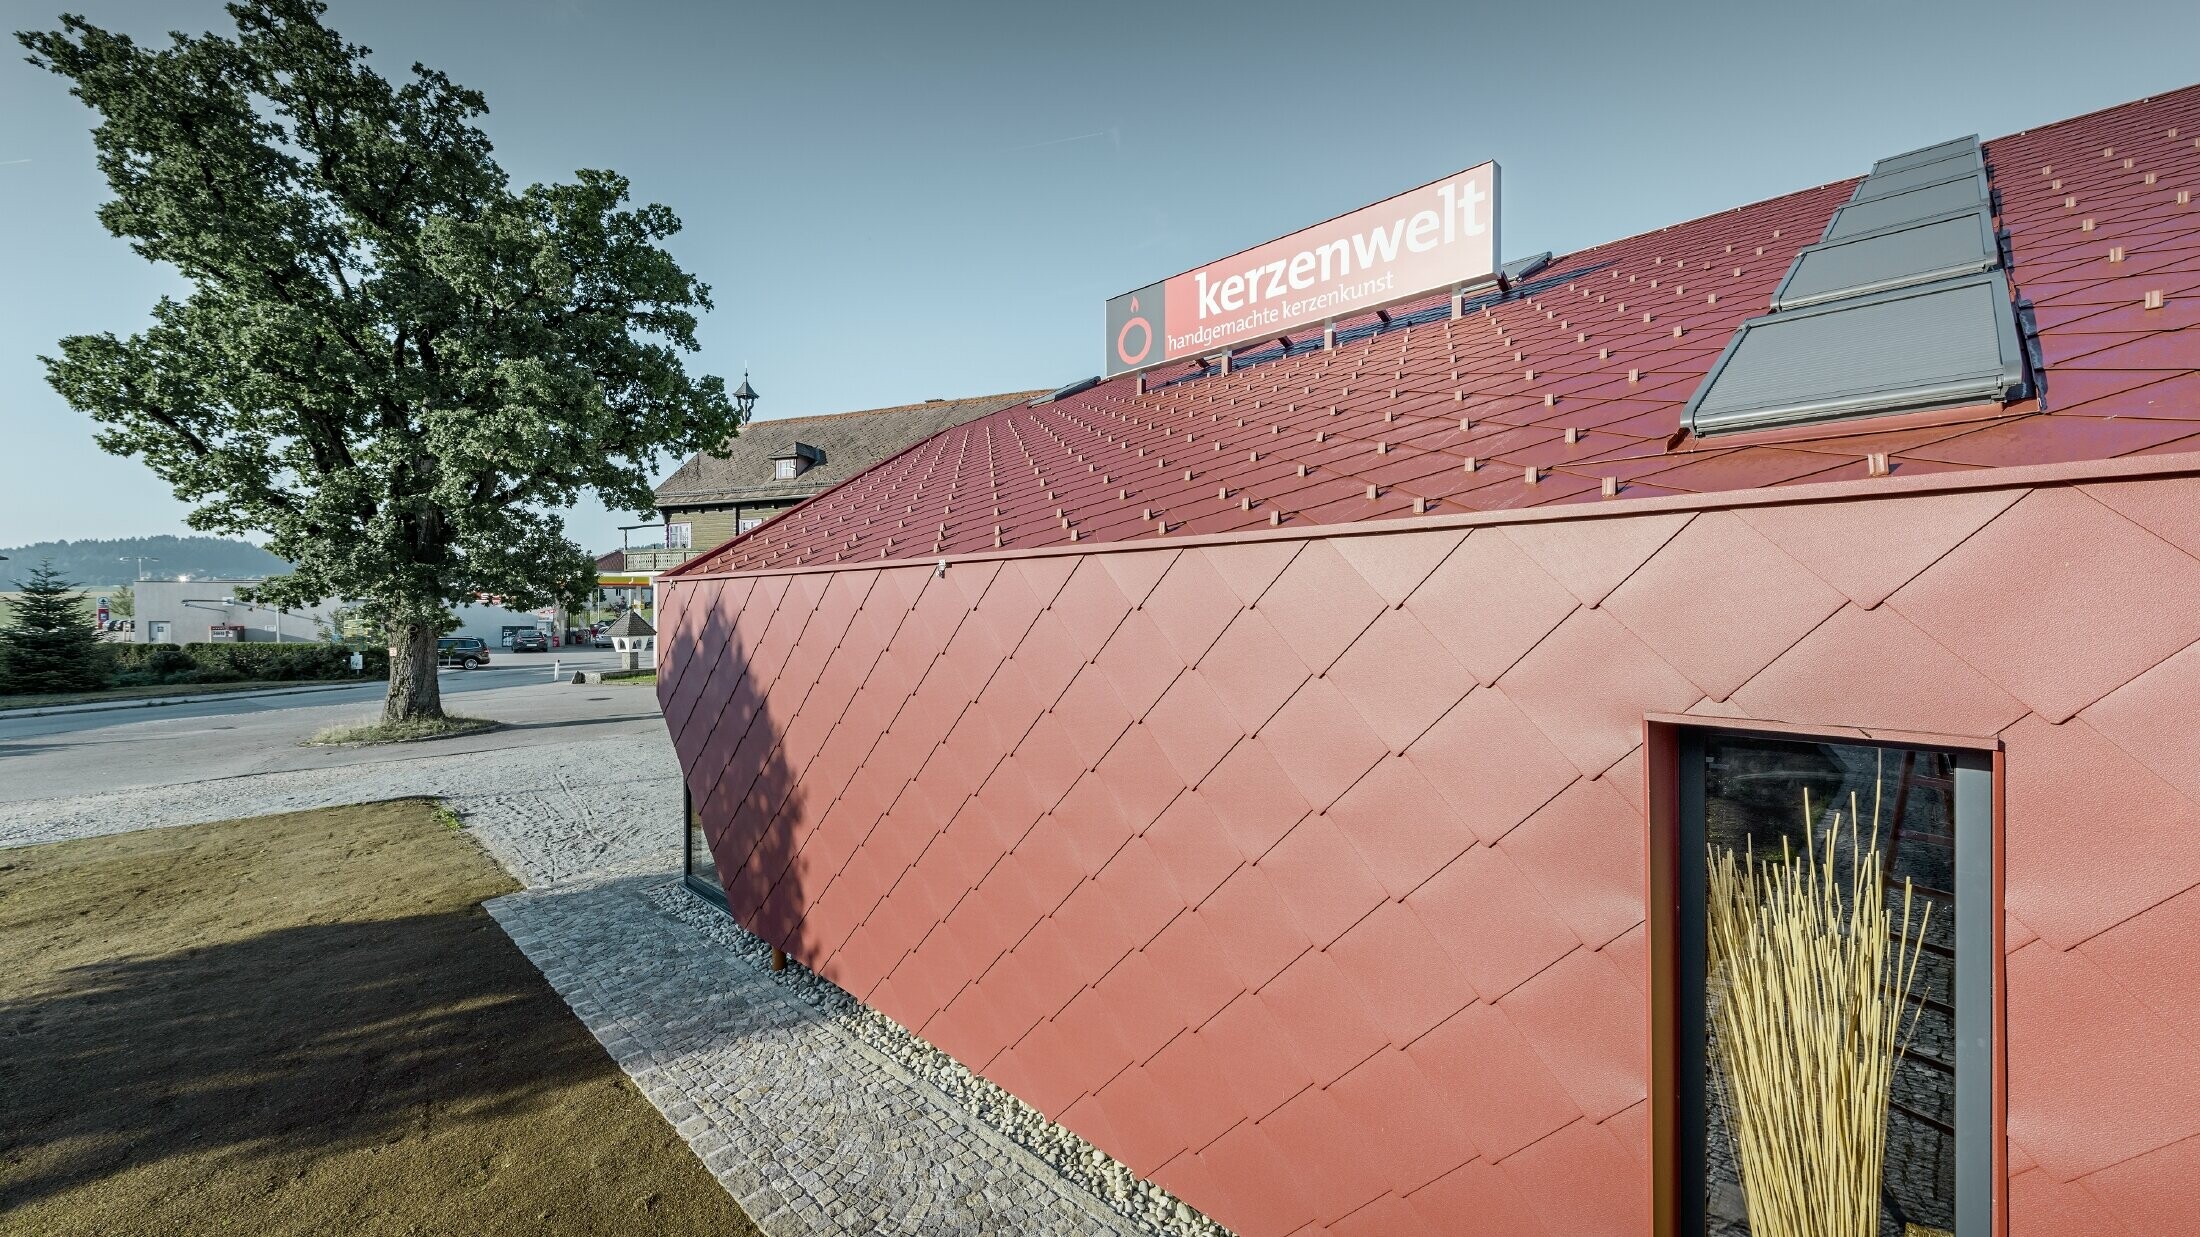 De Kerzenwelt in Schlägl is rondom opnieuw gedekt met de PREFA losange. De dakbedekking en de gevelbekleding zijn uitgevoerd met de losange 44x44 in oxiderood.